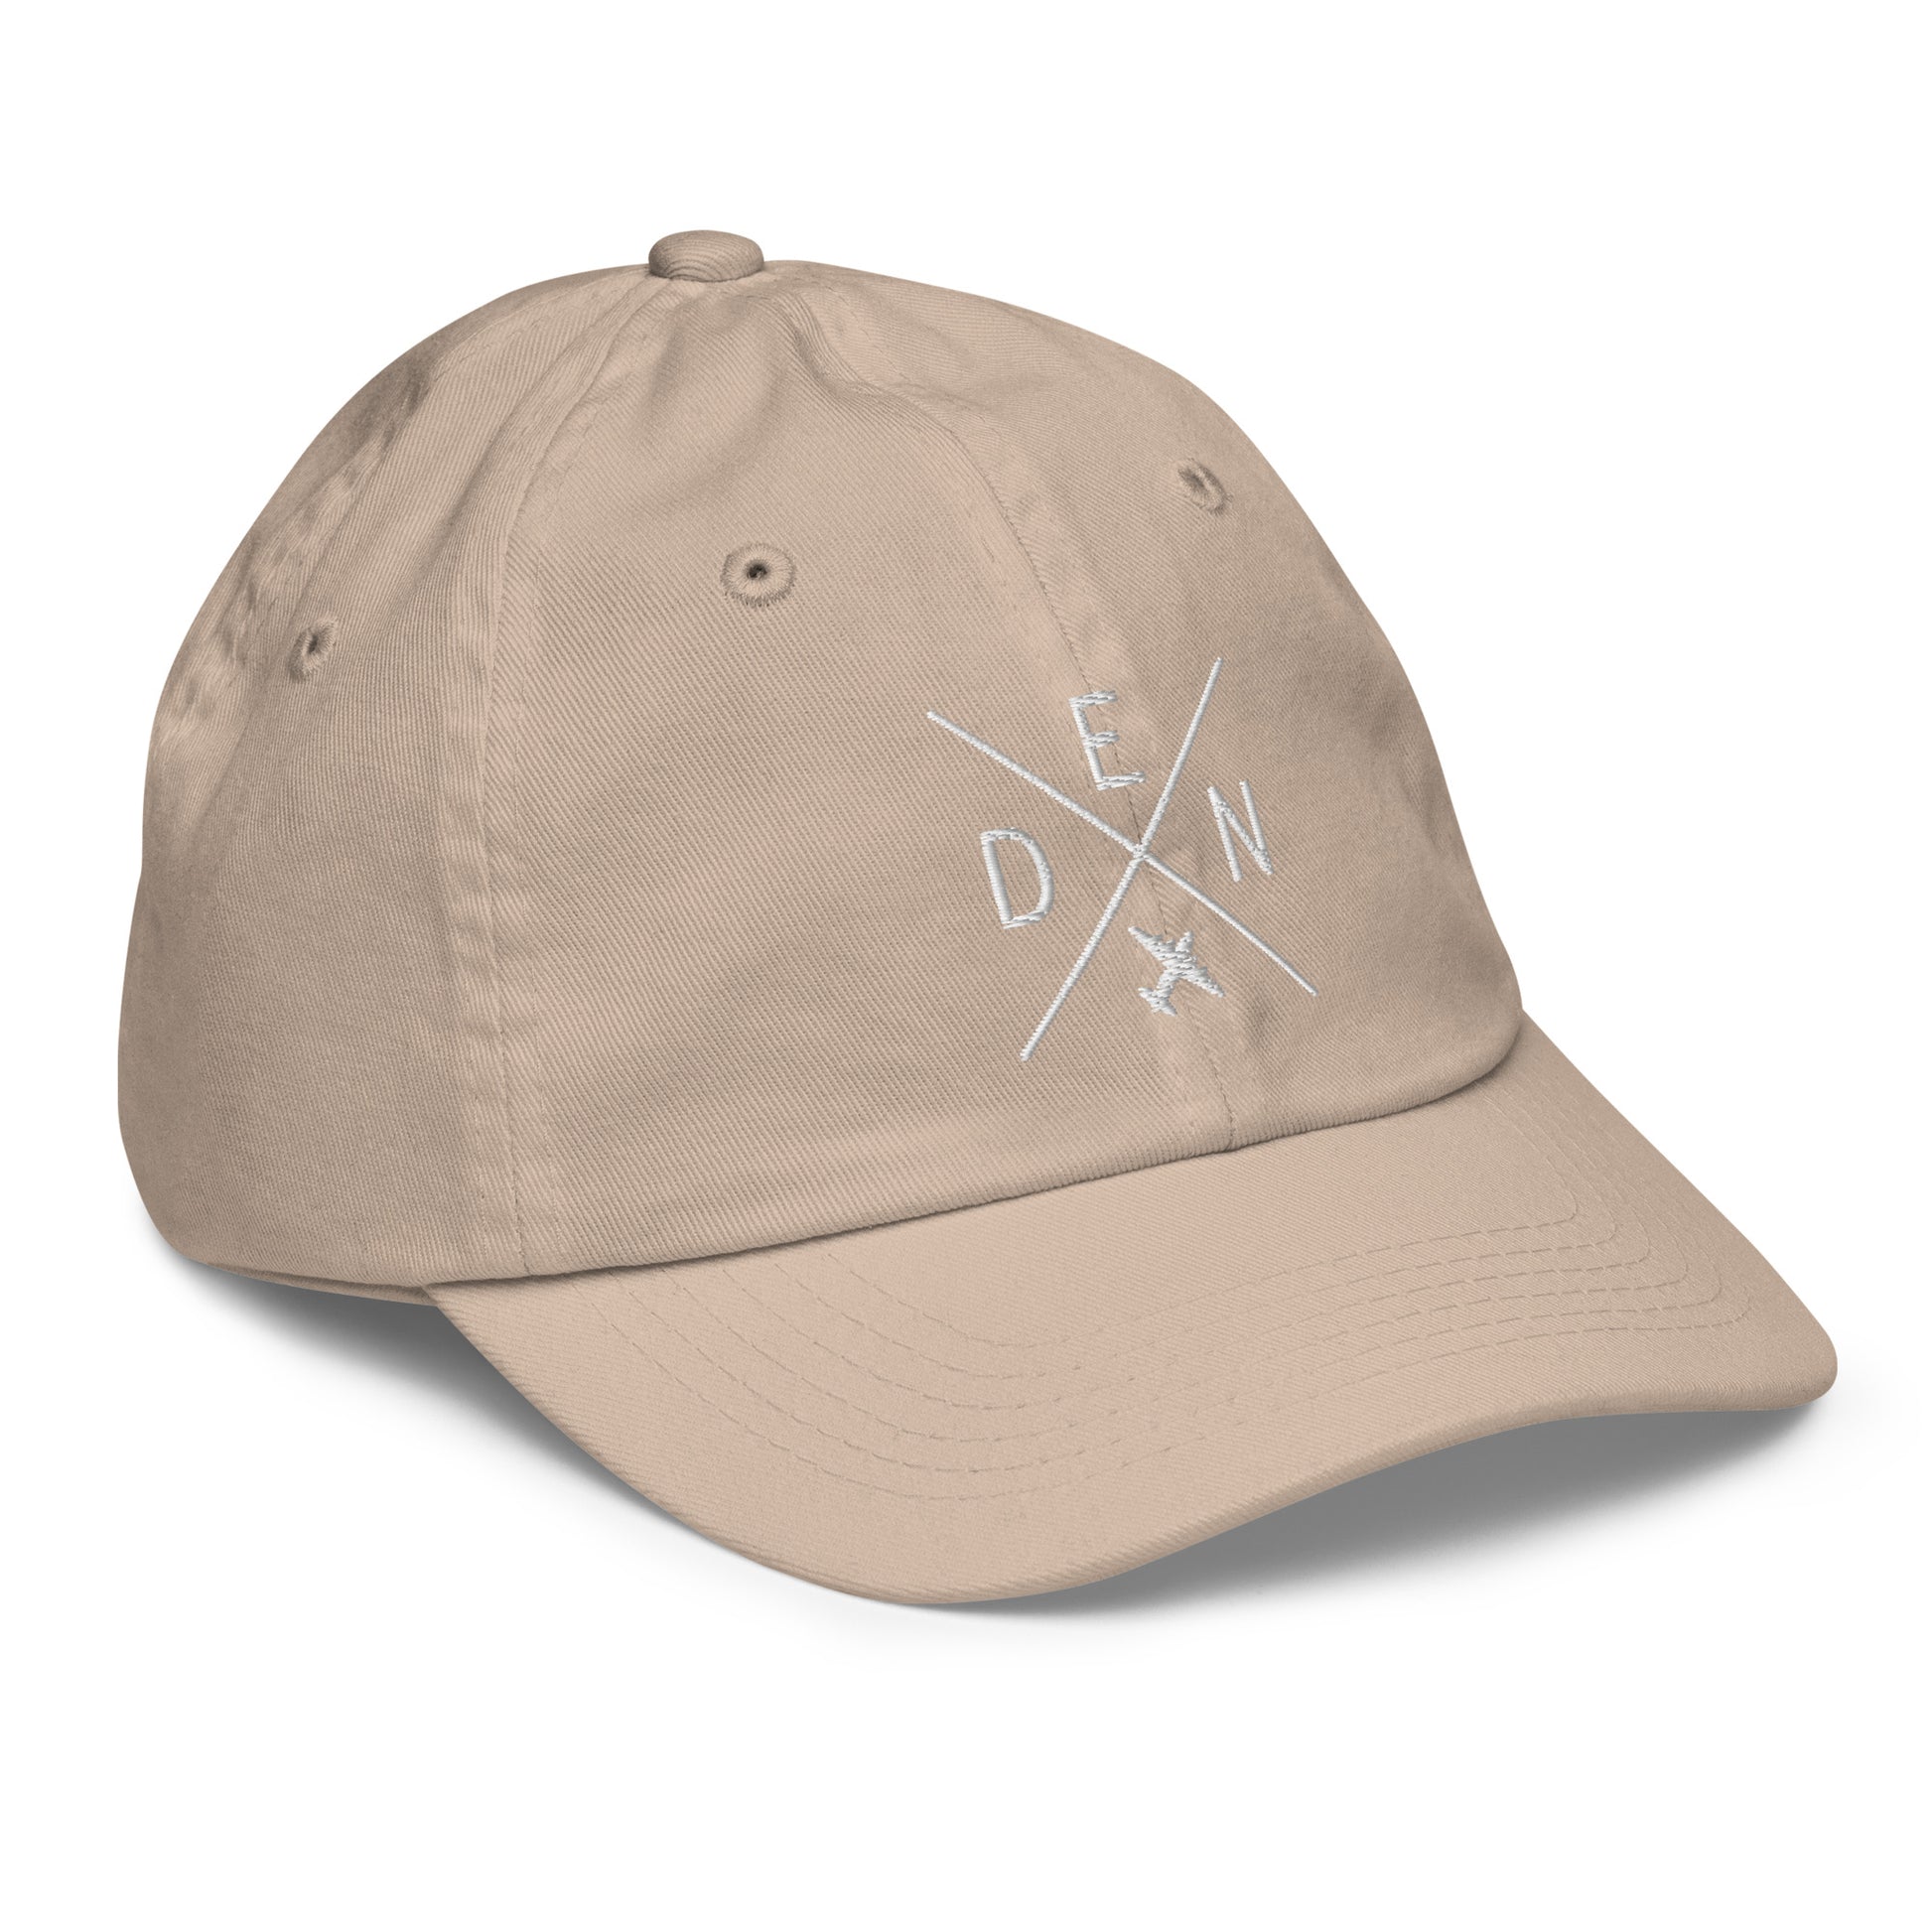 Crossed-X Kid's Baseball Cap - White • DEN Denver • YHM Designs - Image 29